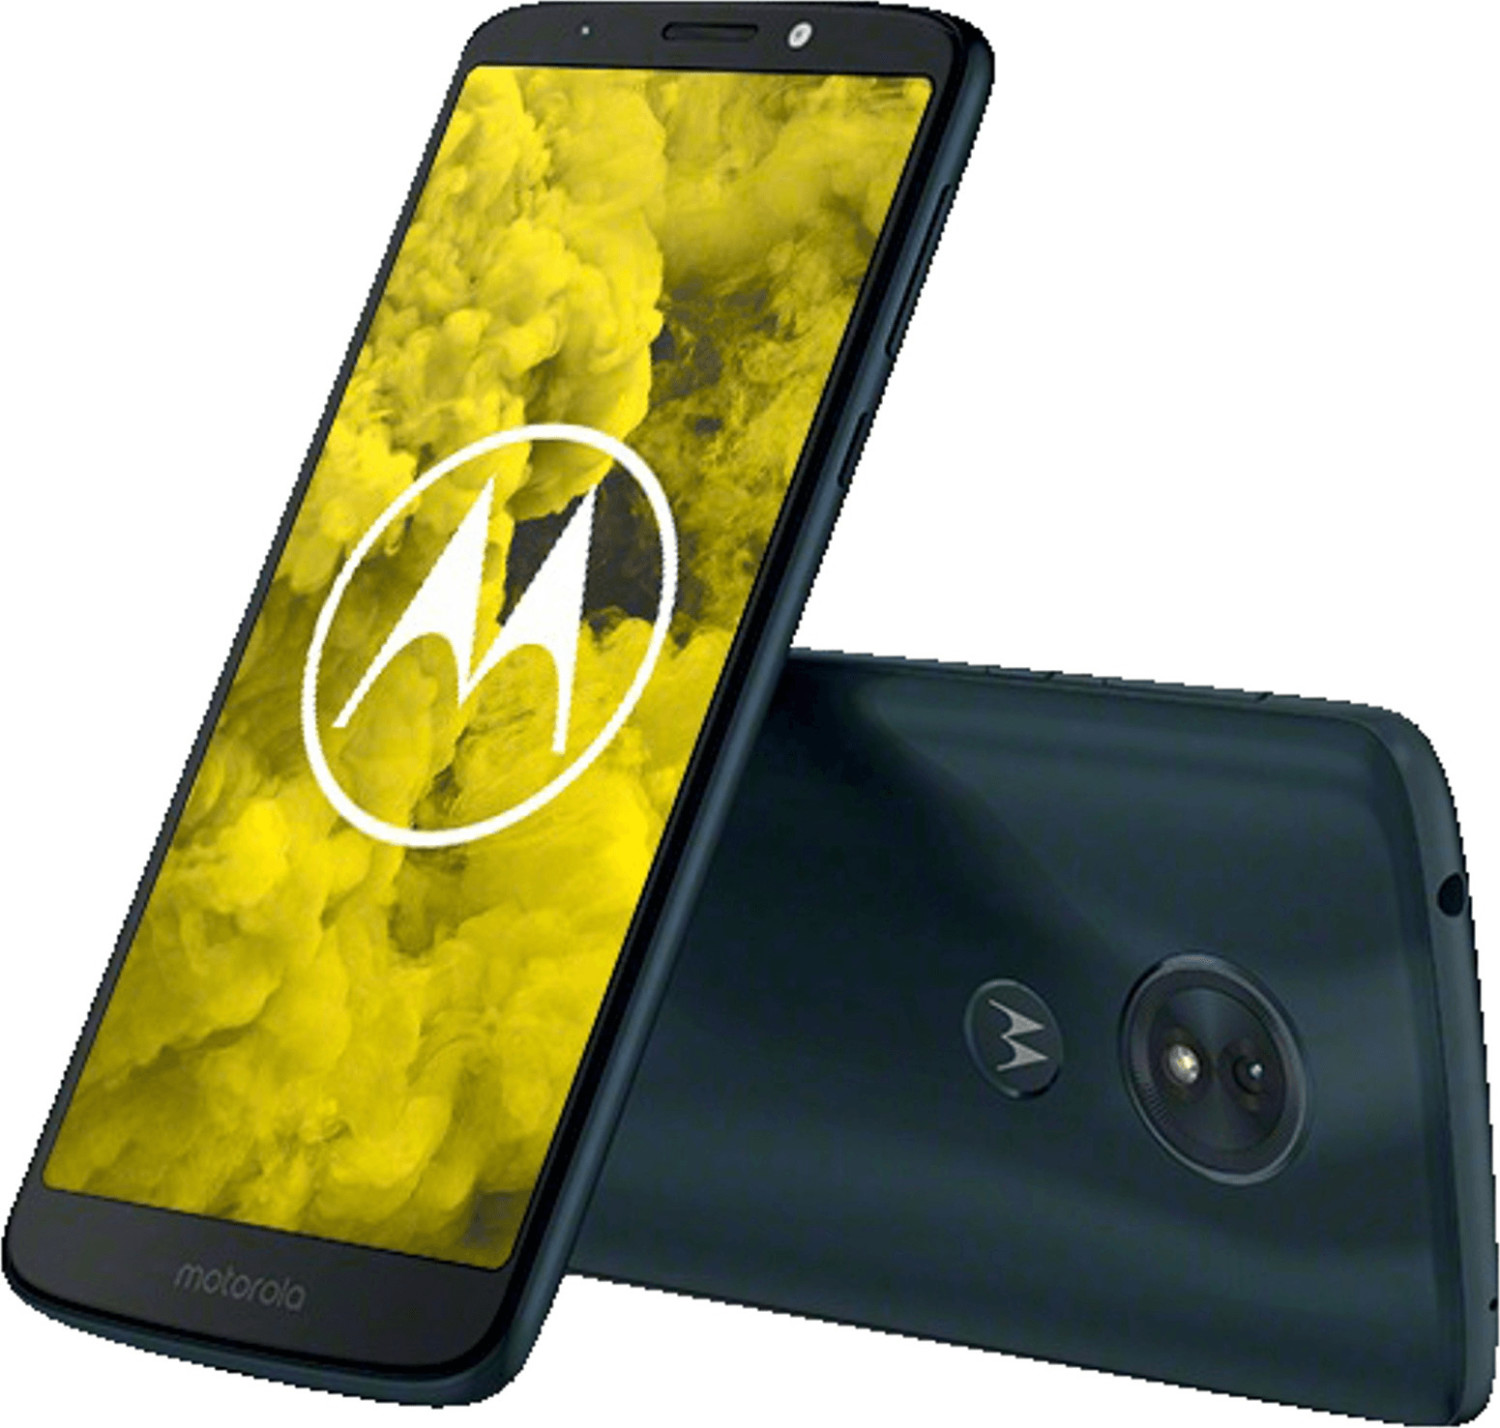 Bild zu 6 Zoll Smartphone Motorola Moto G6 Play für 139€ (Vergleich: 164,90€)